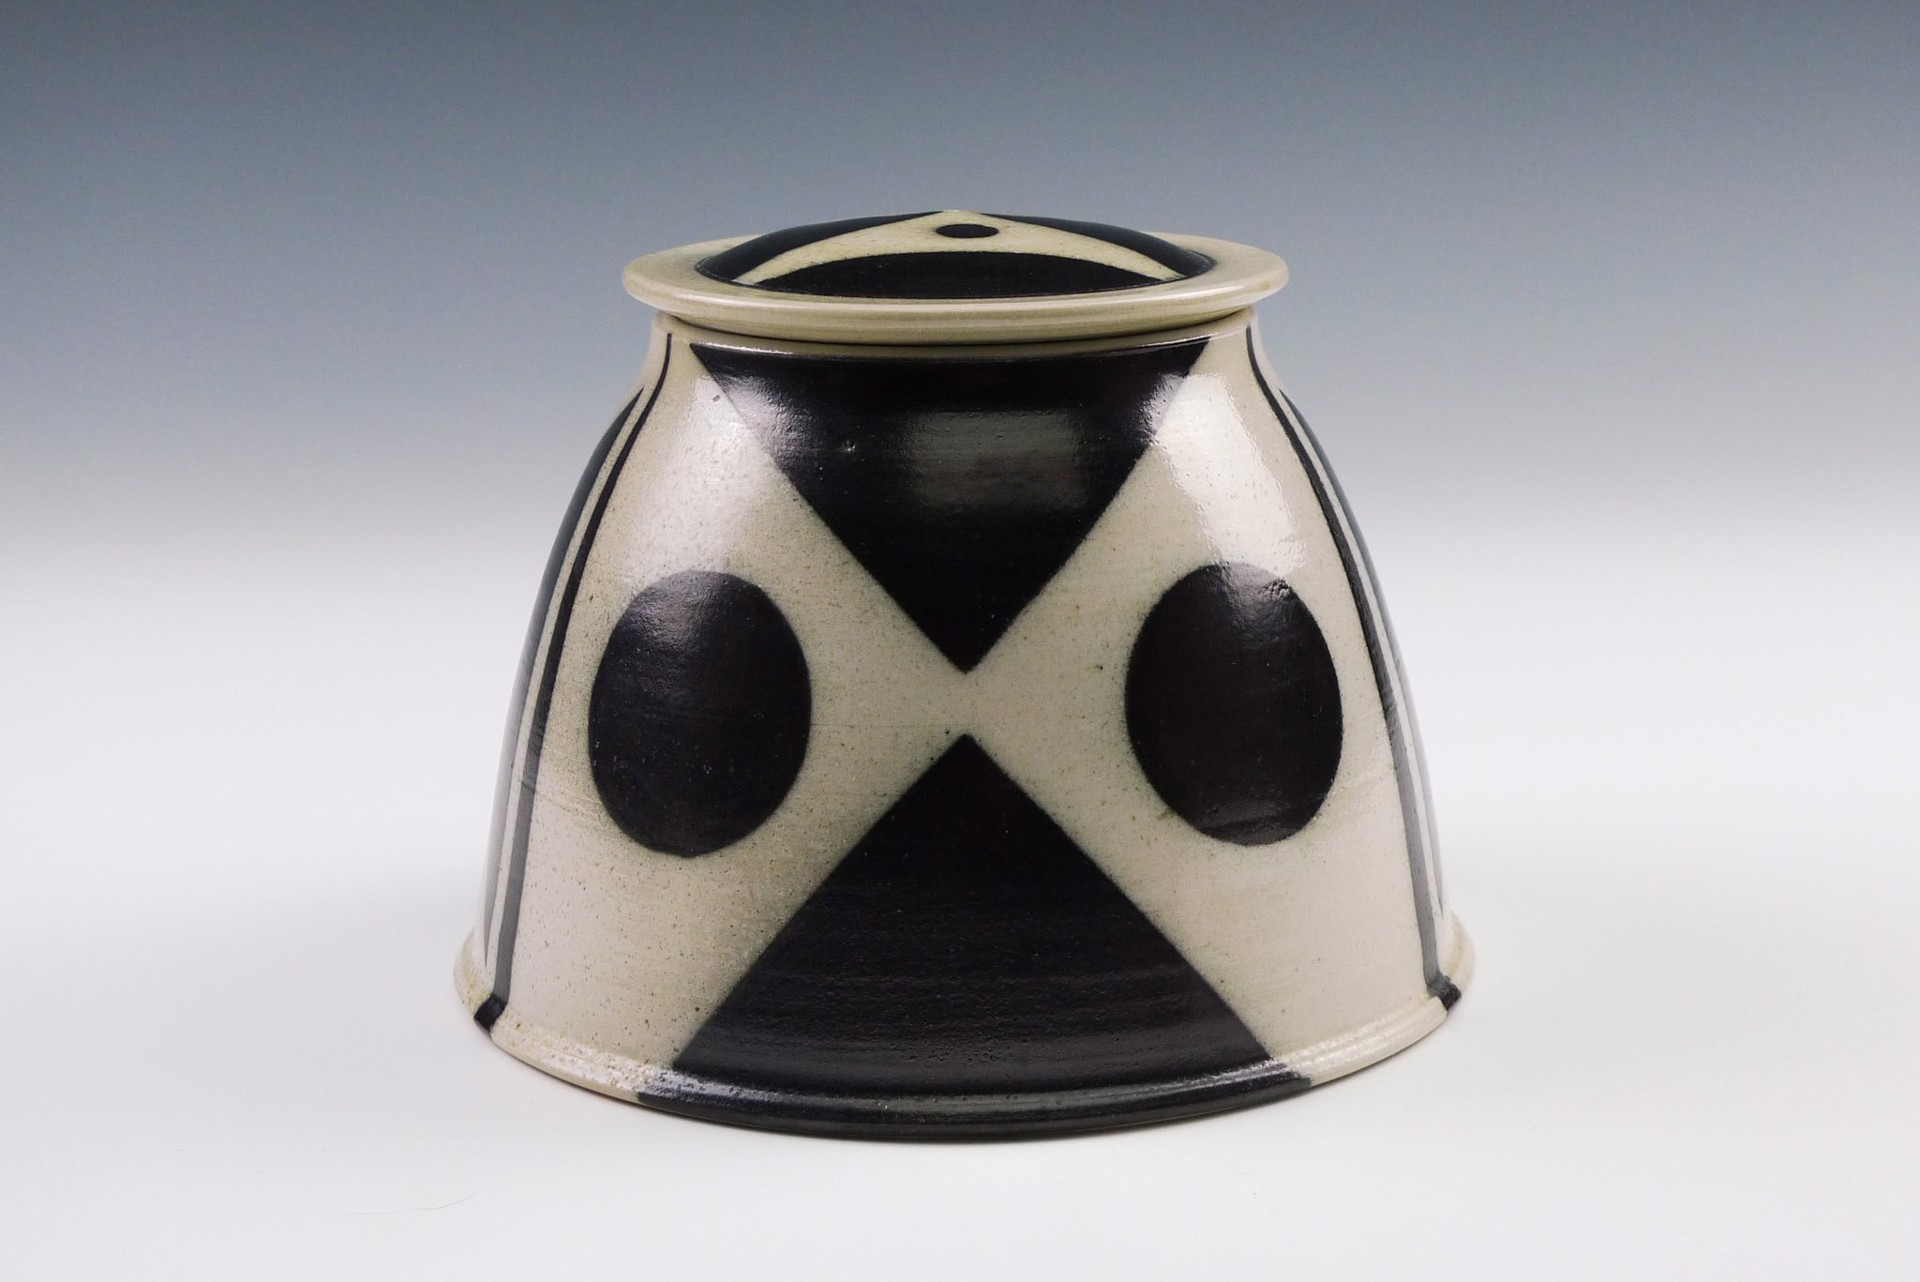 Jar by Joanne Kirkland